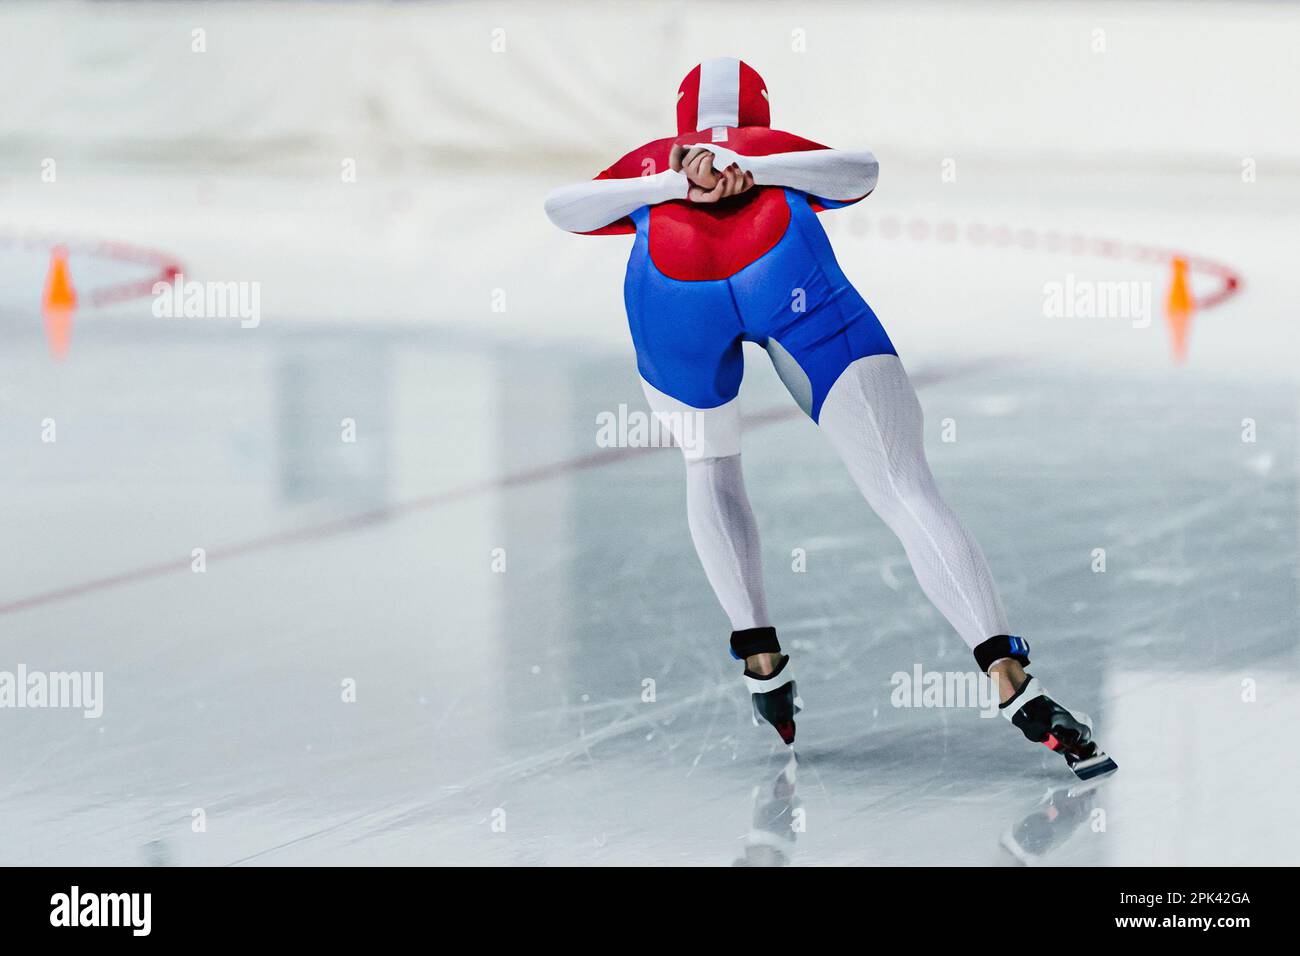 patineuses de derrière en compétition de patinage de vitesse, jeux de sports d'hiver Banque D'Images